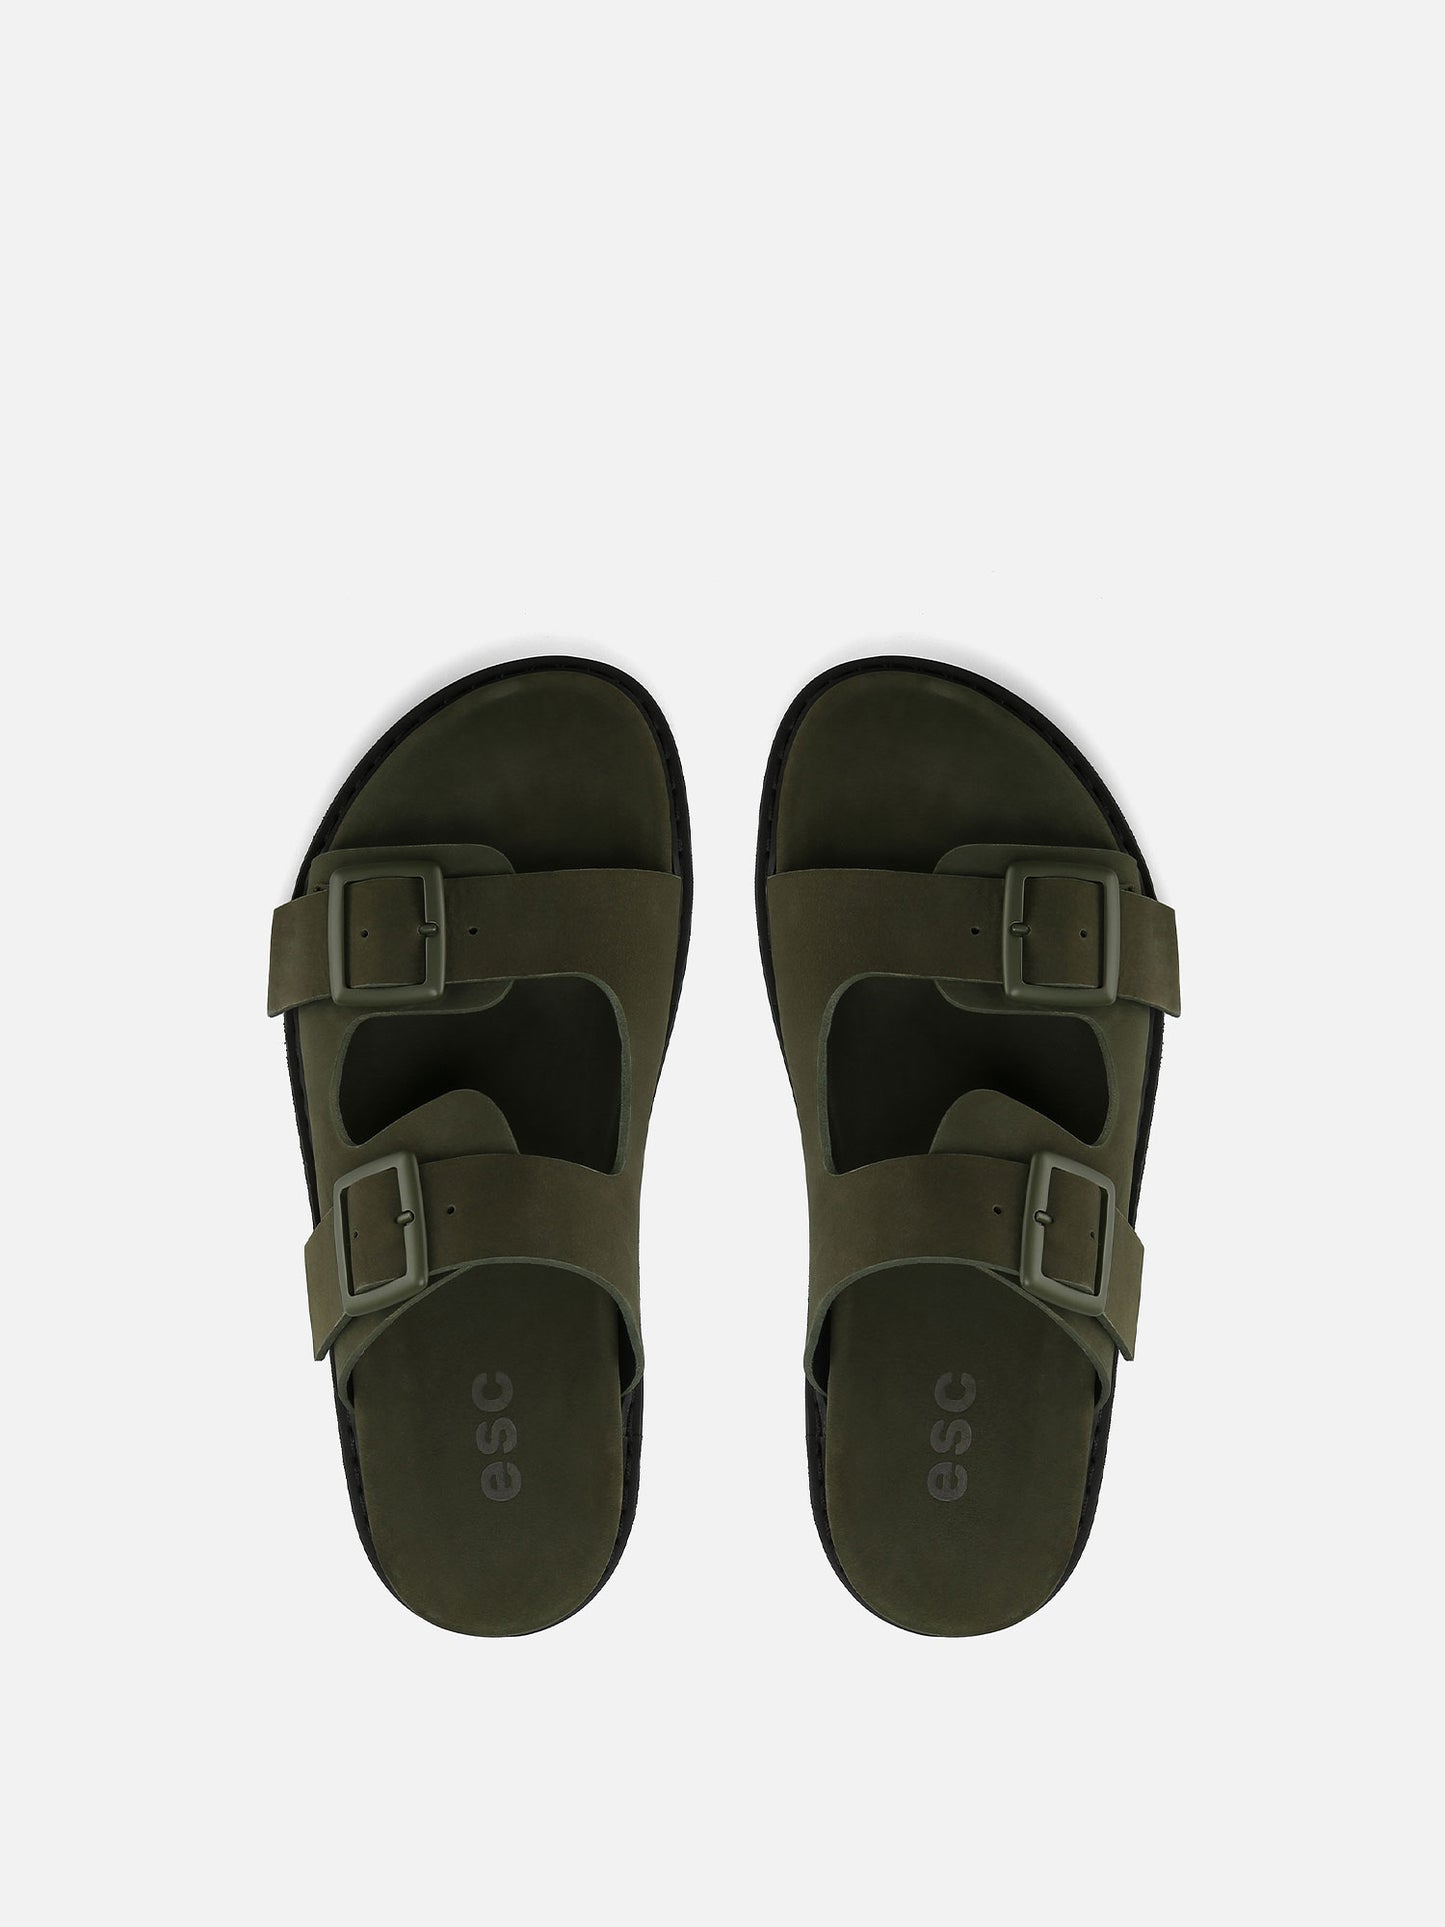 CARIBE Leather Sandals - Khaki